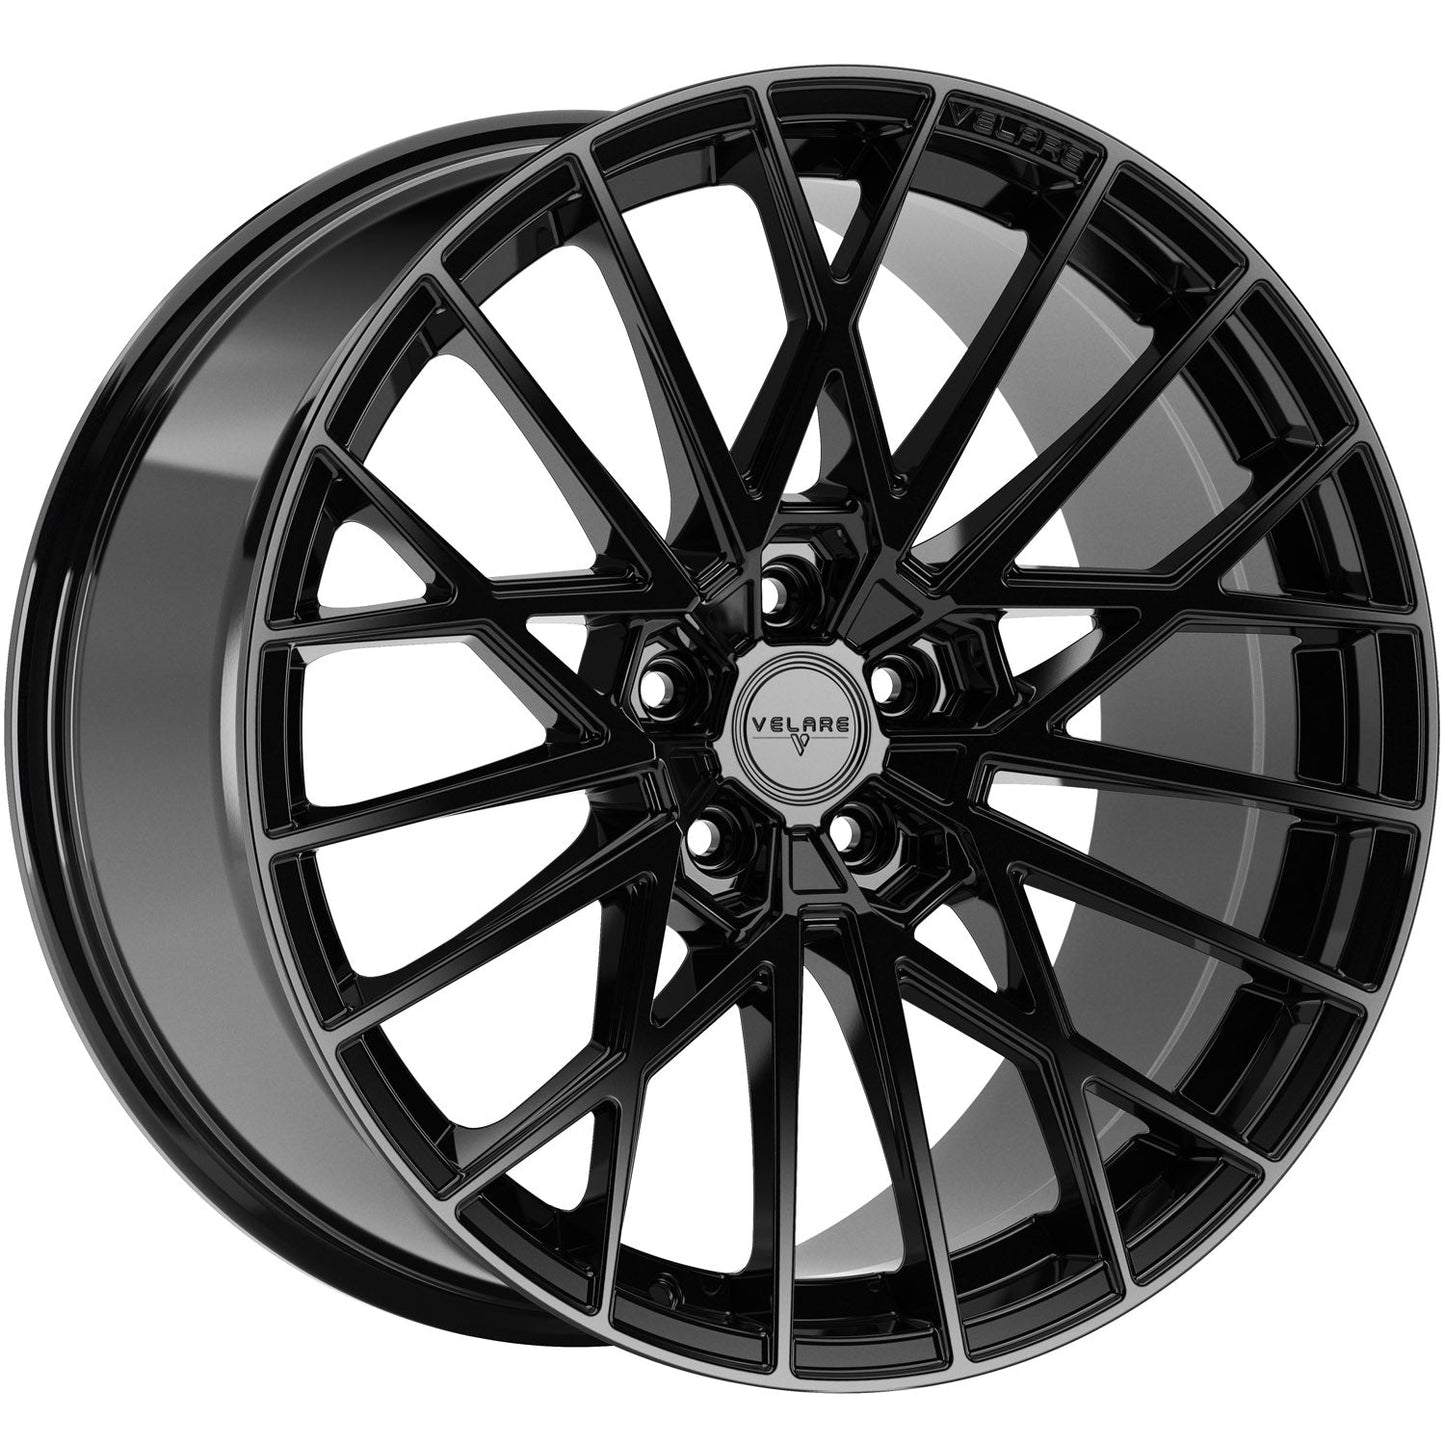 Velare-VLR07-Diamond-Black-Black-20x8.5-72.6-wheels-rims-felger-Felghuset